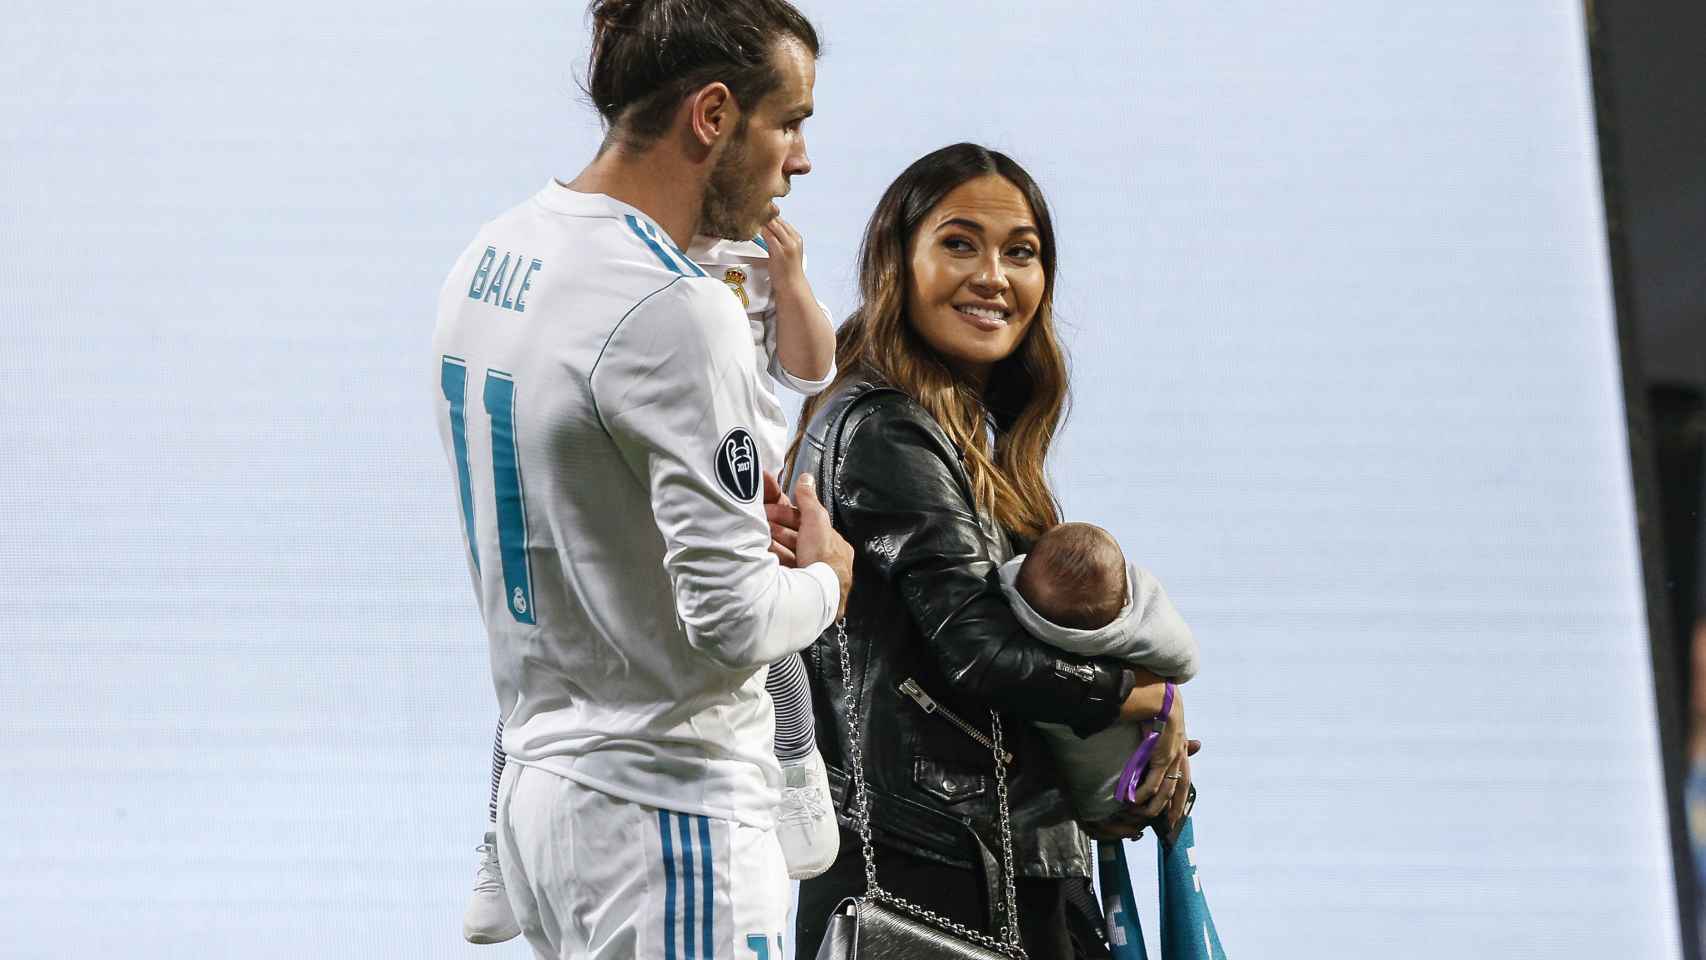 Gareth Bale y su novia Emma Rhys durante una celebración en el Bernabéu.